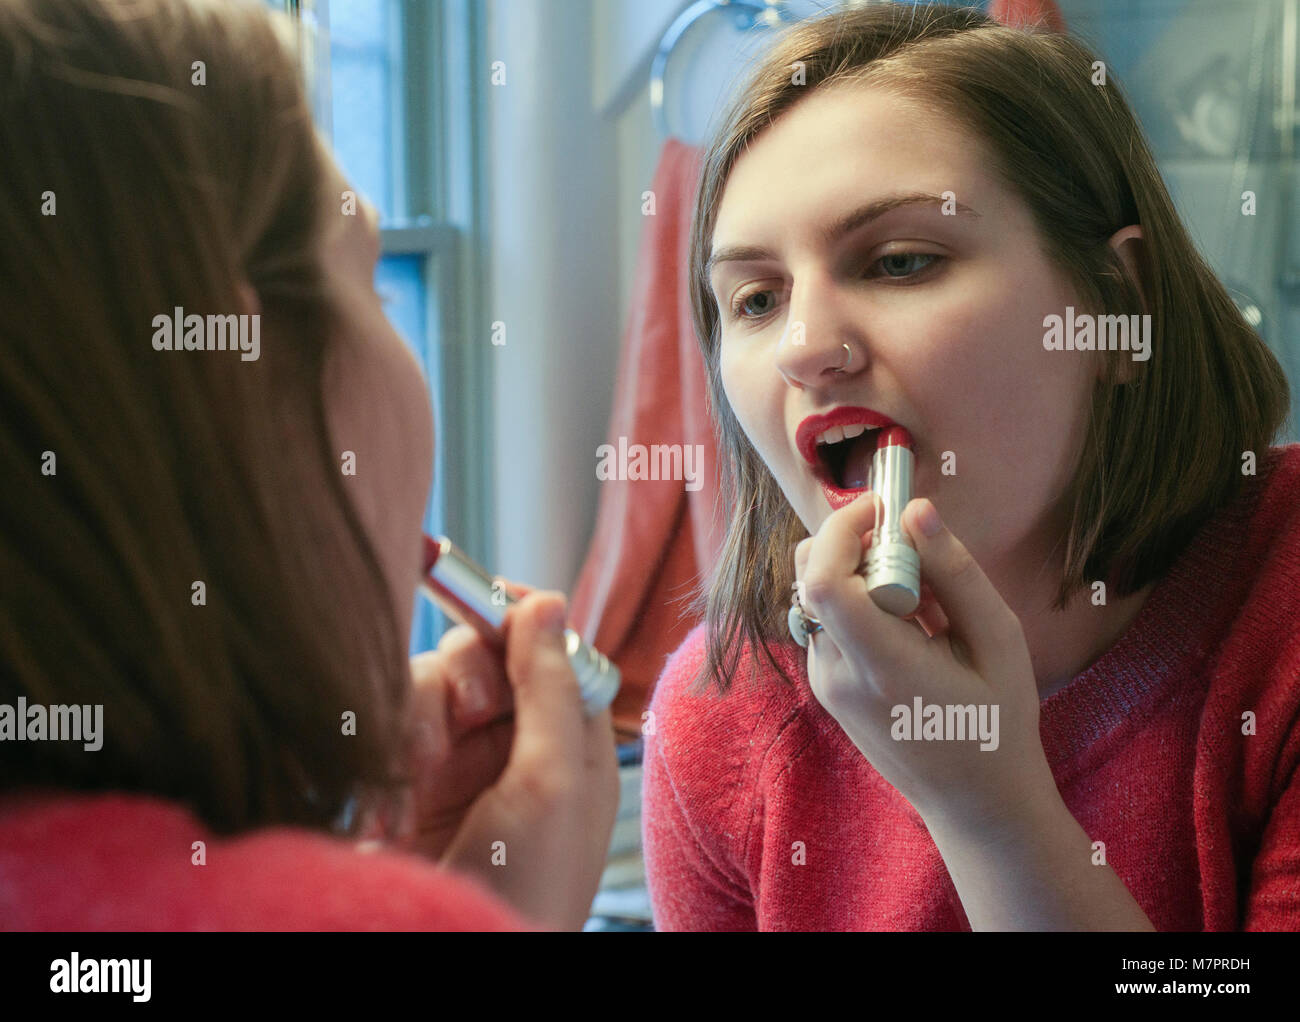 Ein Mädchen im Teenageralter setzen auf Lippenstift. Stockfoto